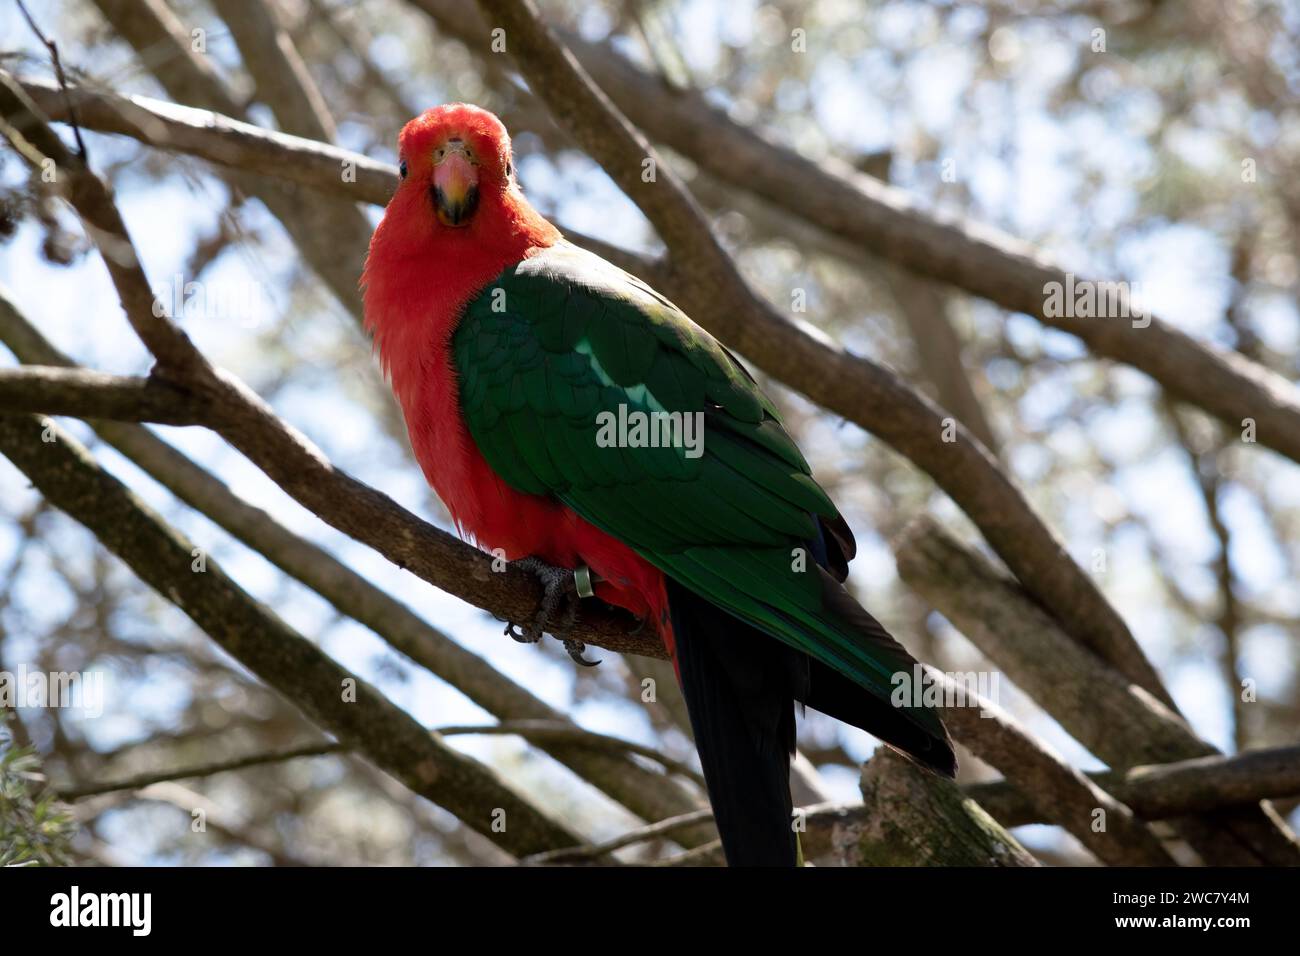 Der australische Königspapagei hat einen roten Bauch und einen grünen Rücken, mit grünen Flügeln und einem langen grünen Schwanz. Die männlichen australischen Königspapageien sind die einzigen aus Stockfoto